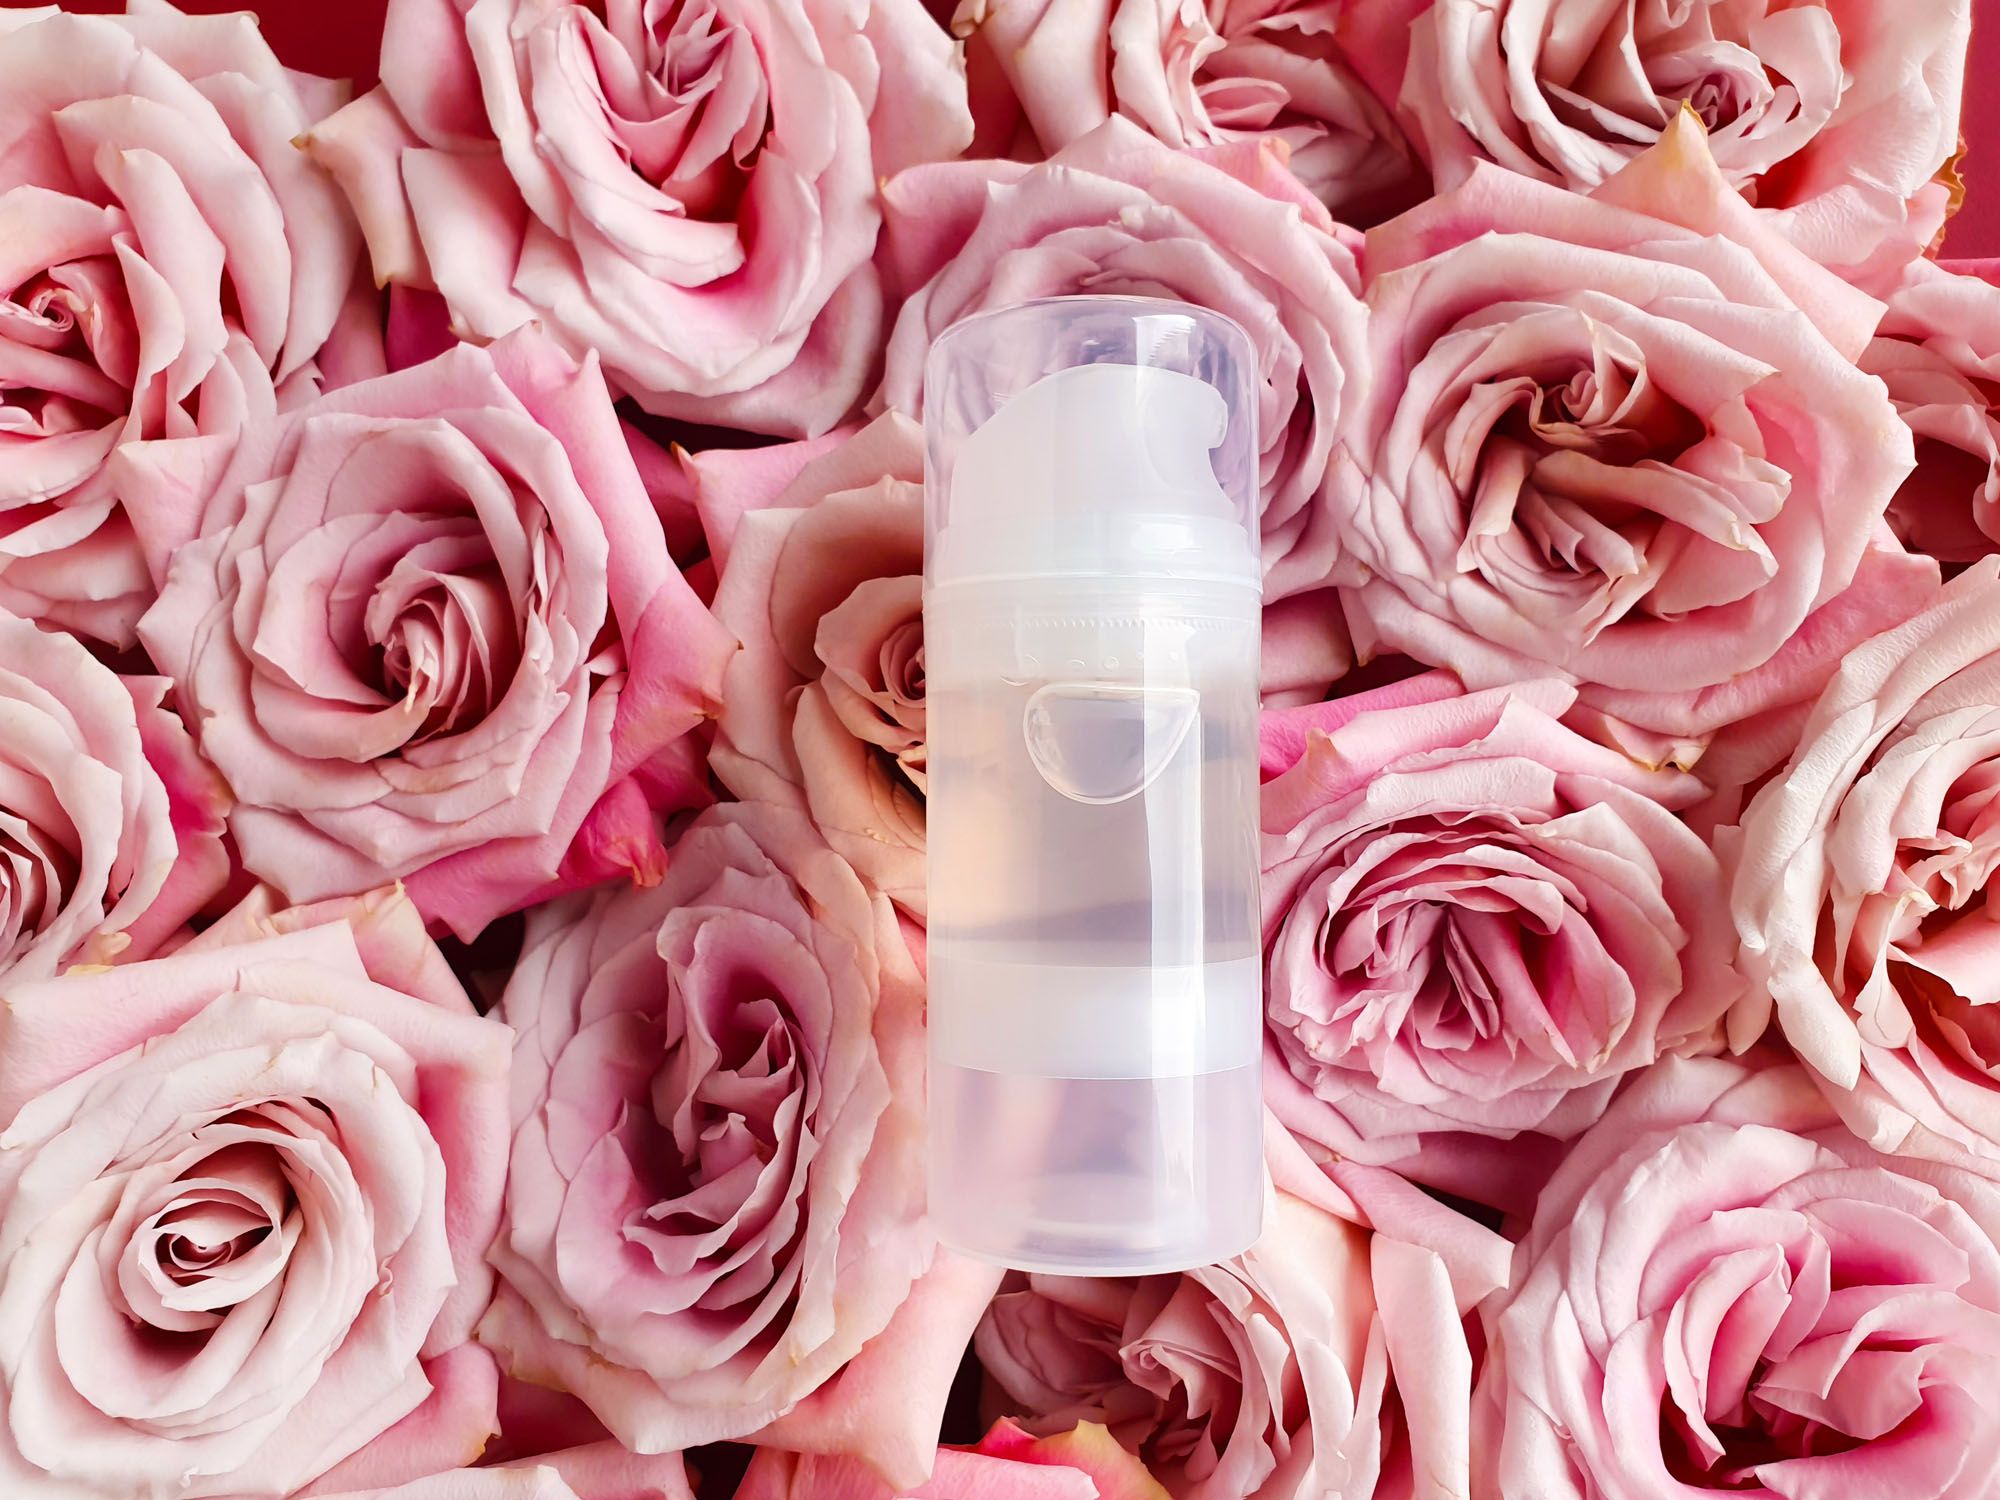 Gleitgel in einem transparenten Pumpspender, der auf rosa Rosen liegt